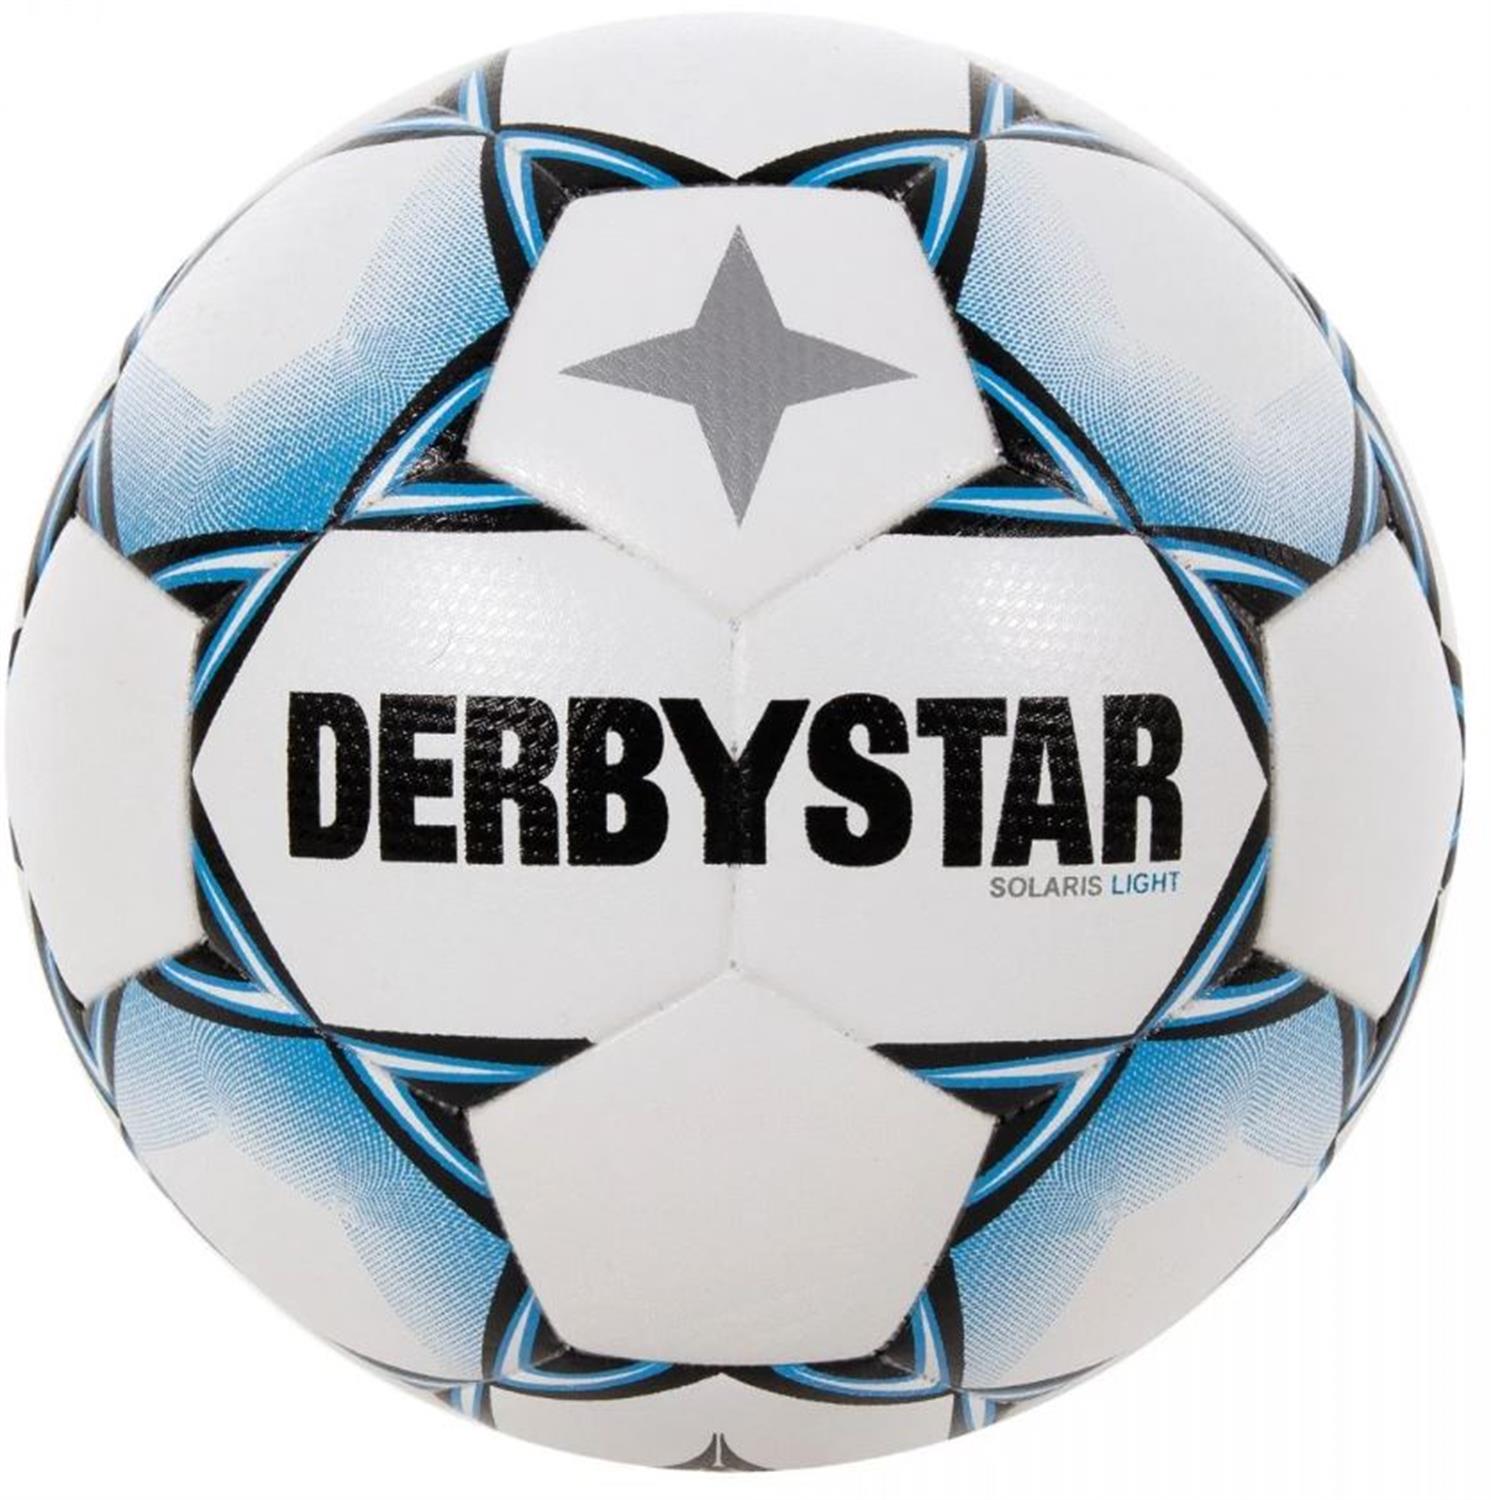 Derbystar Solaris light